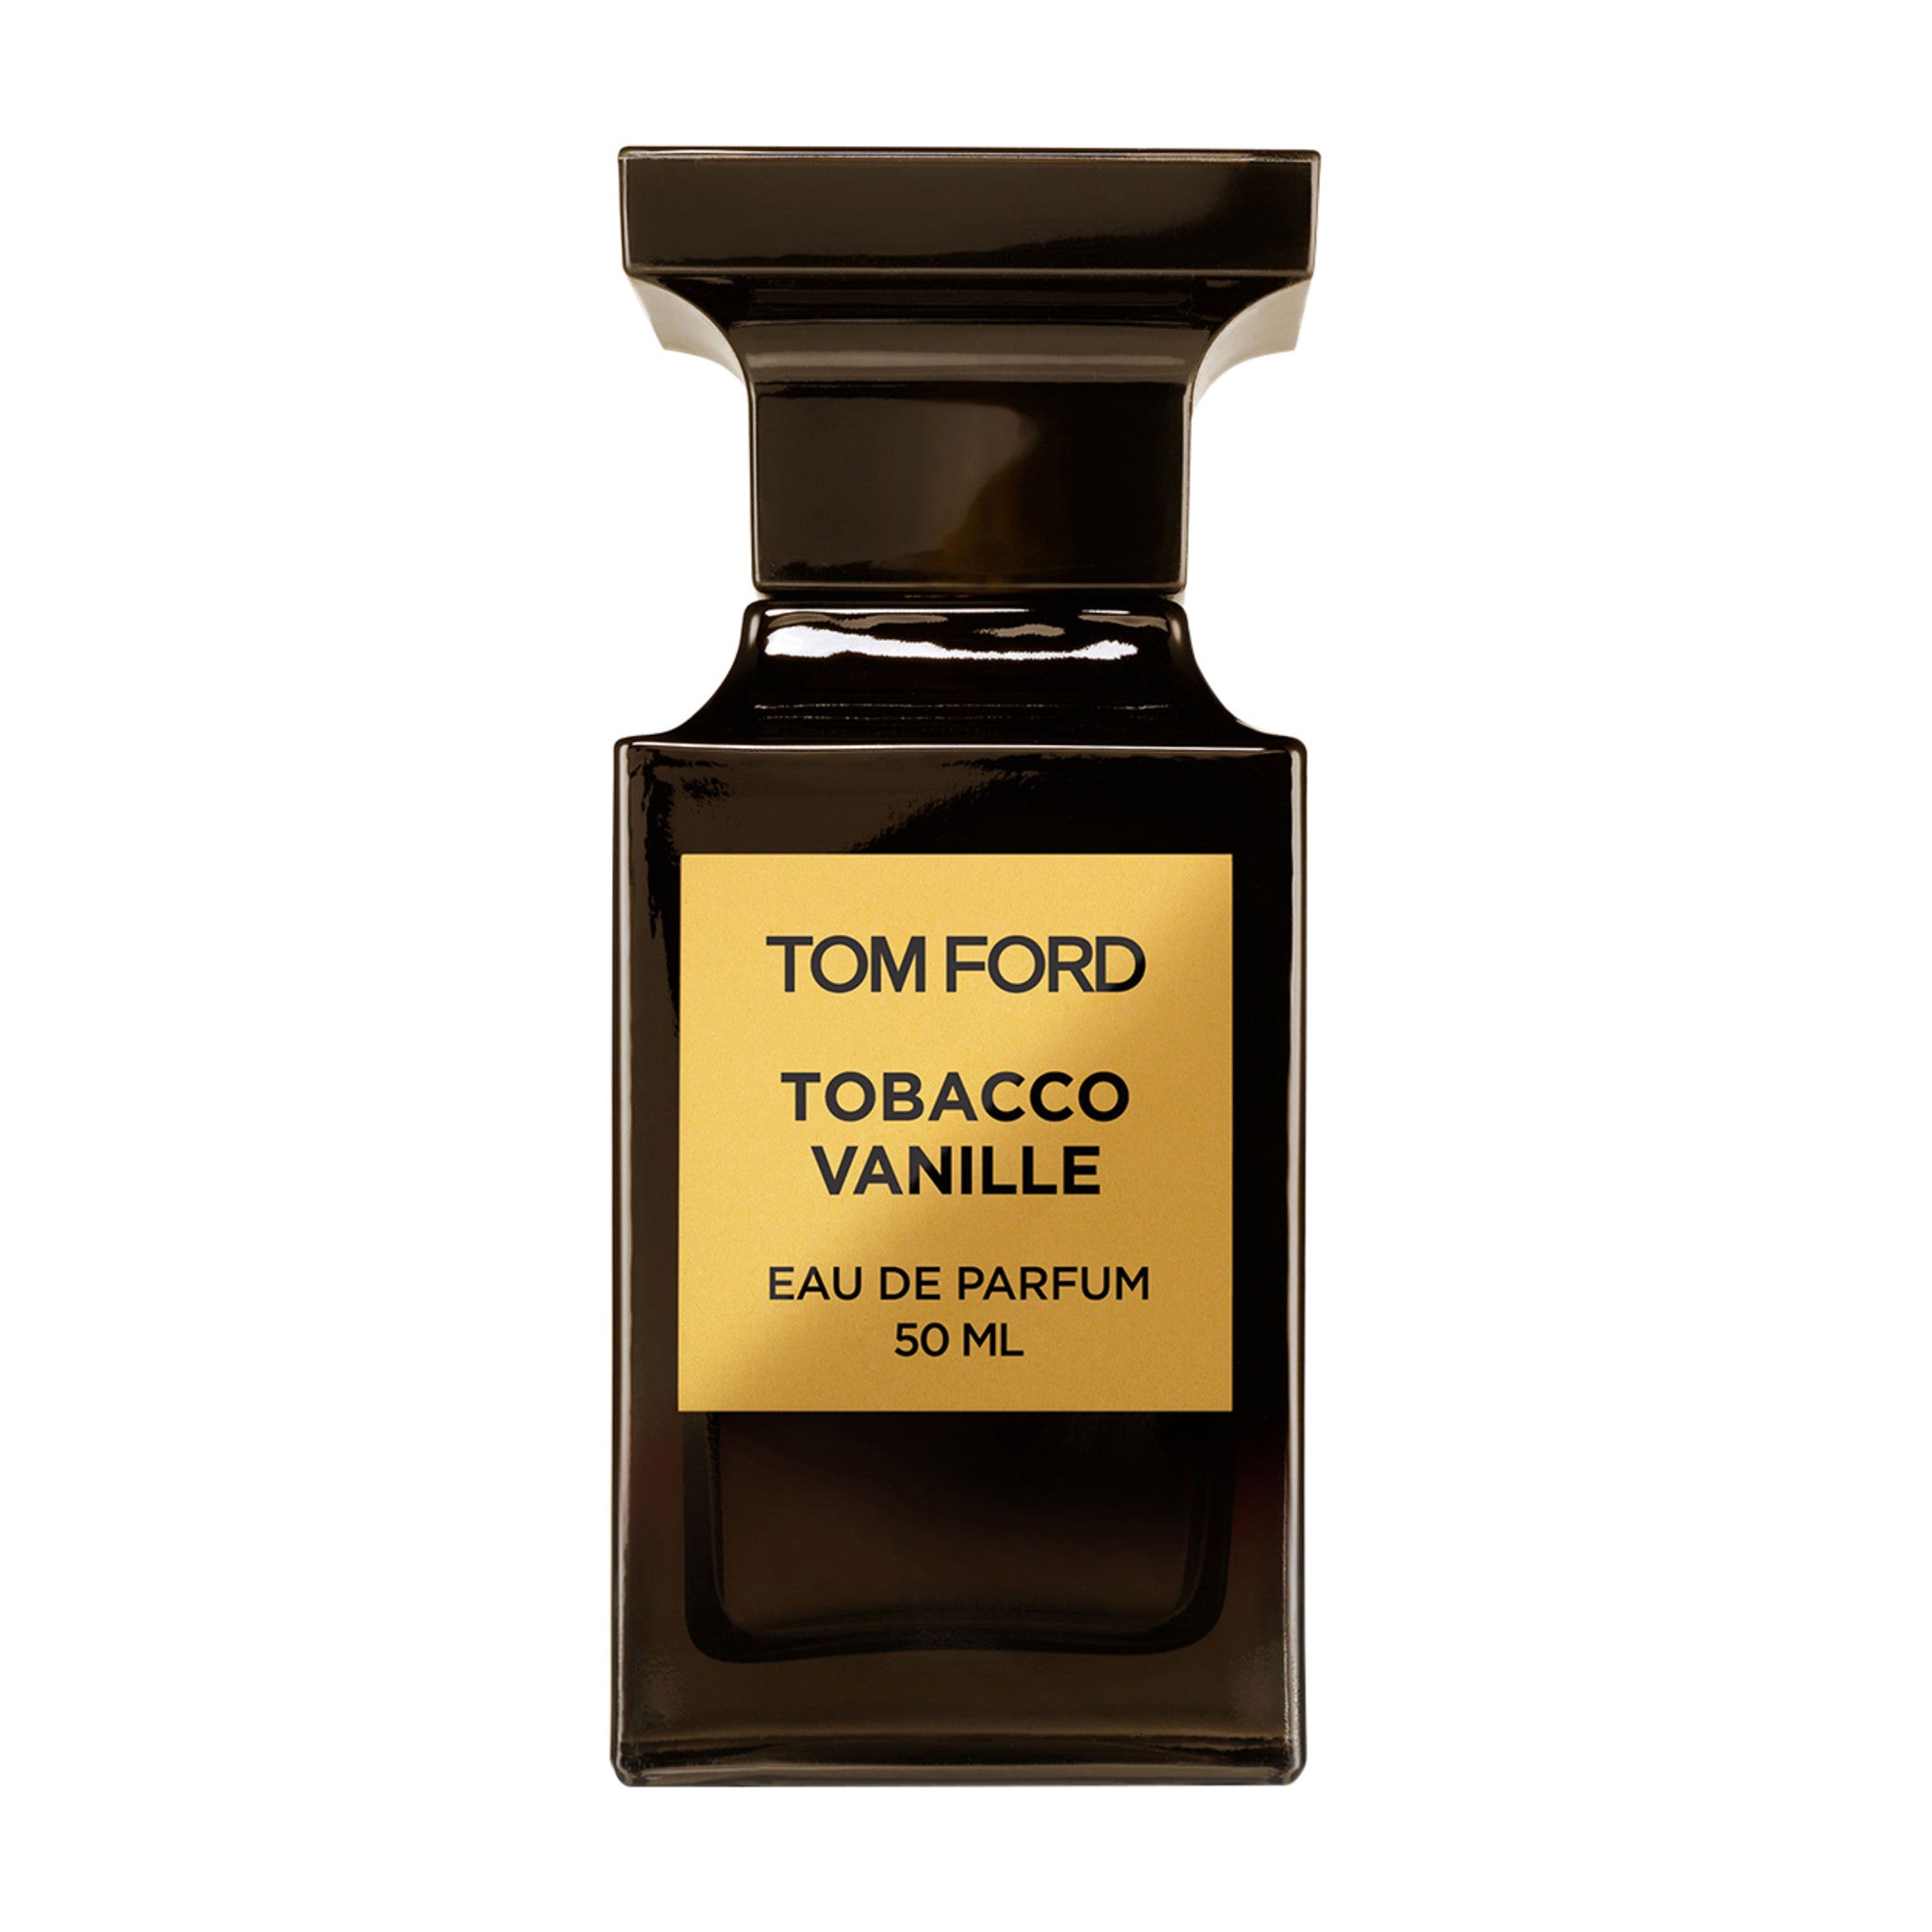 12 Best Tom Ford Fragrances For Men: Ultimate Guide